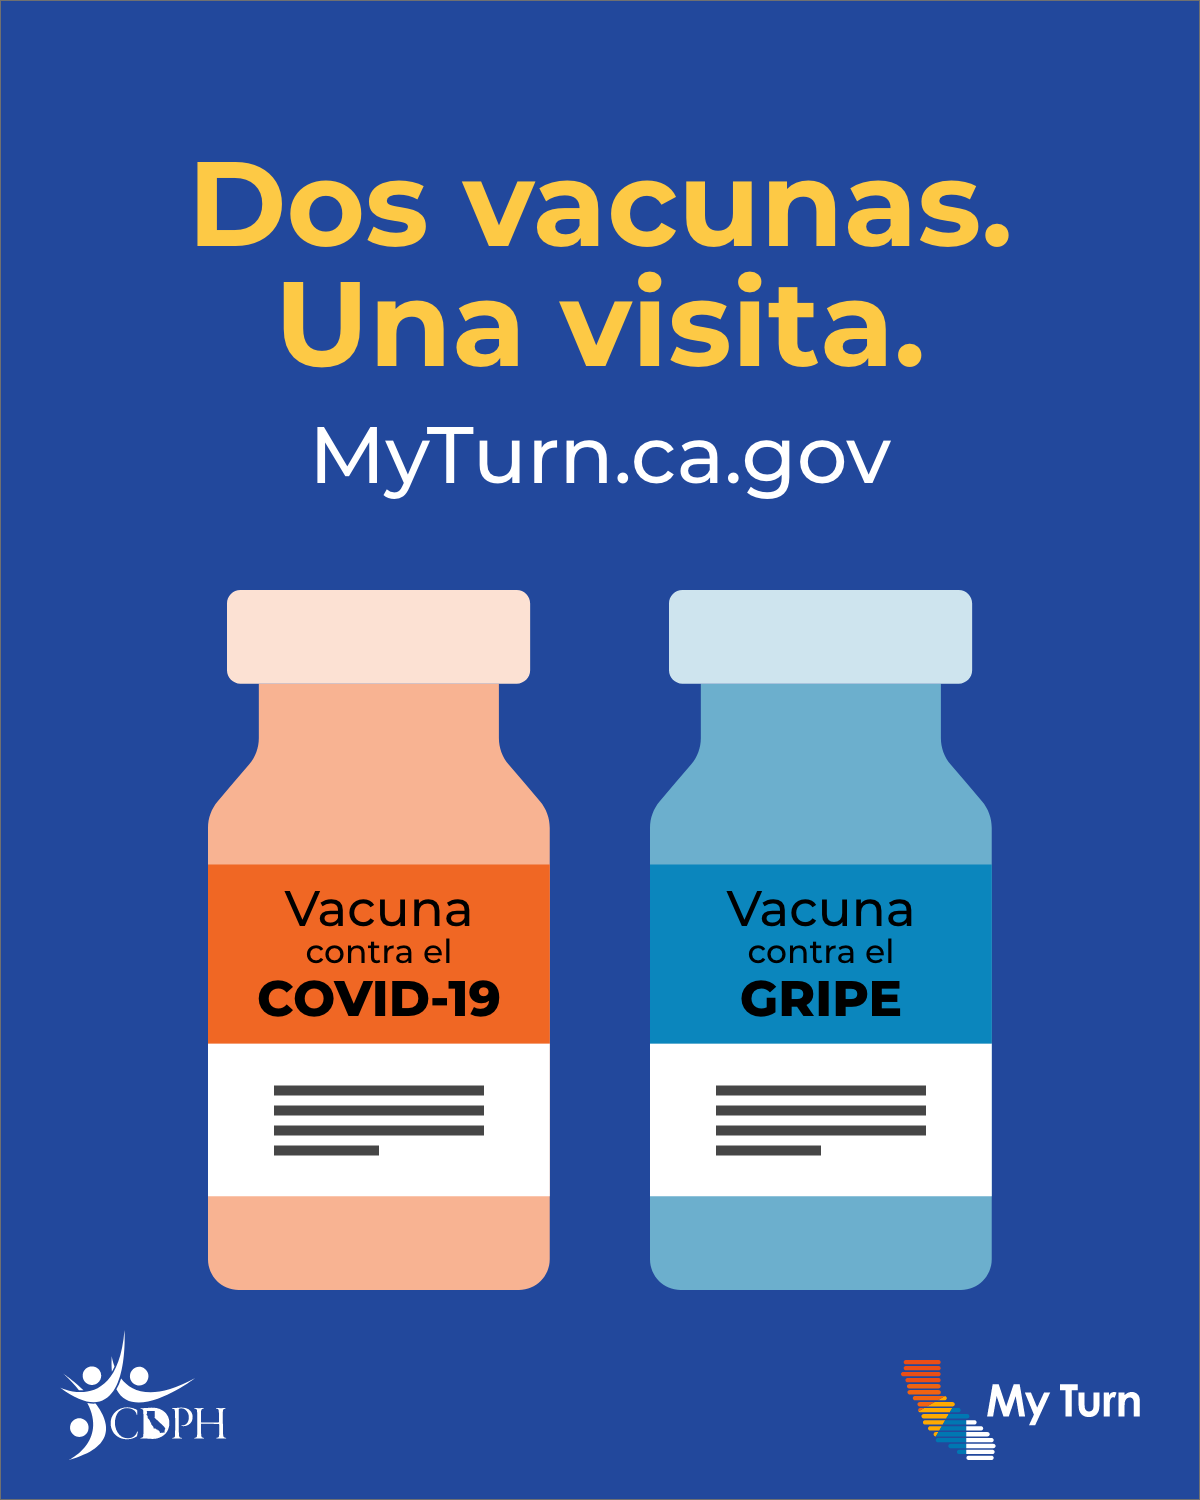 Dos vacunas. una visita